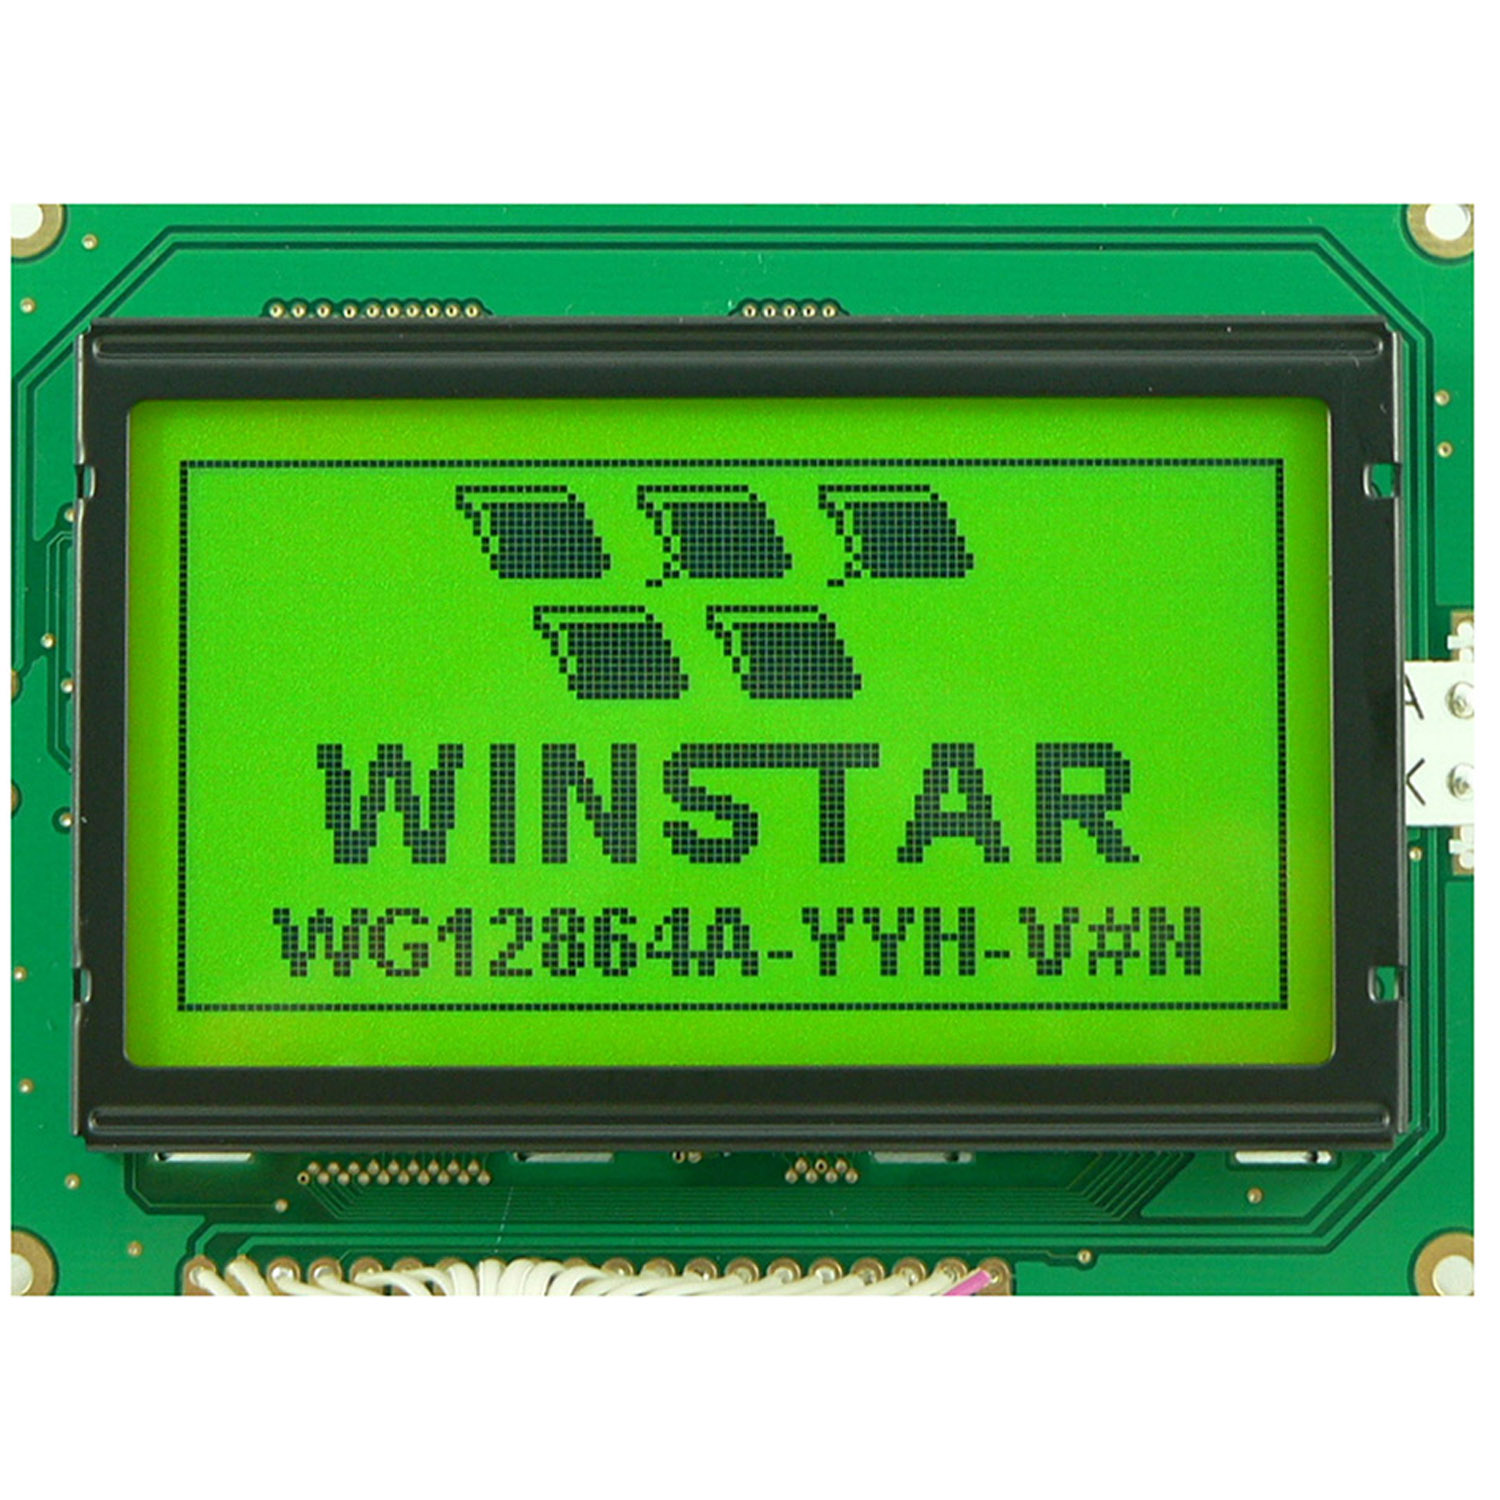 WINSTAR WG12864A символьный дисплей 128x64 (серый), фото